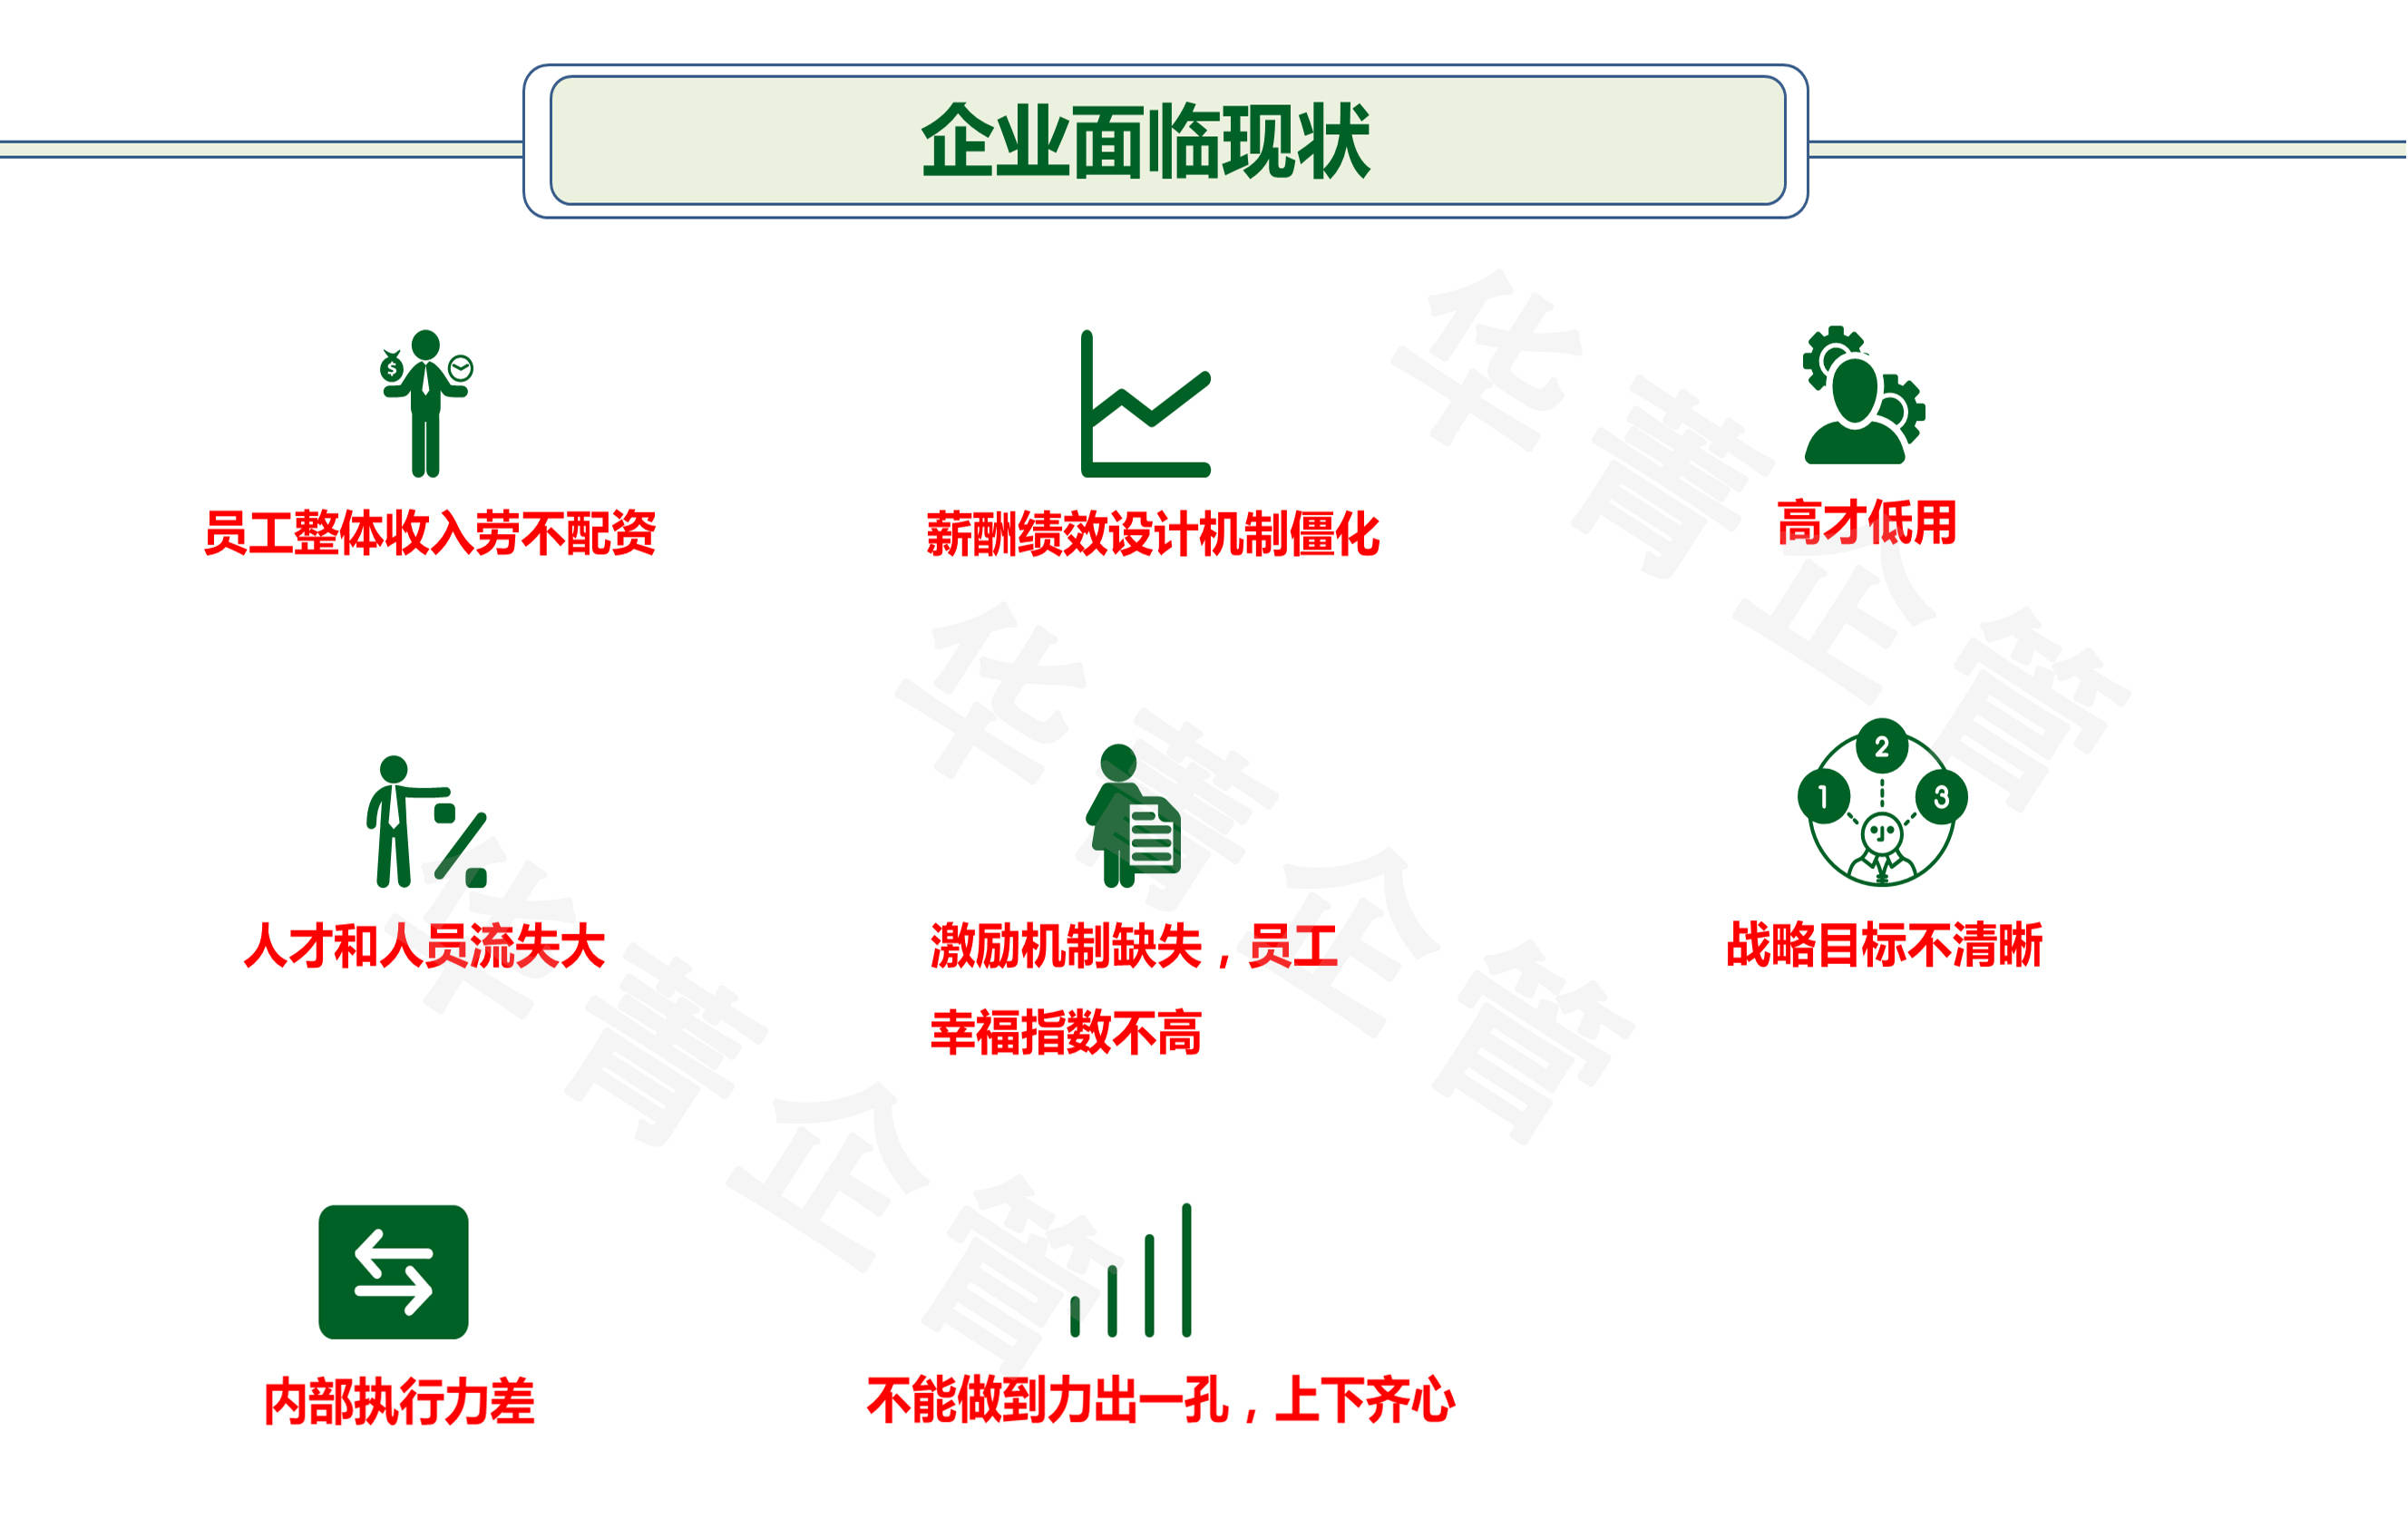 YOO棋牌官方网站长沙做计谋性的比力凸起的薪酬绩效策画办理征询公司(图1)